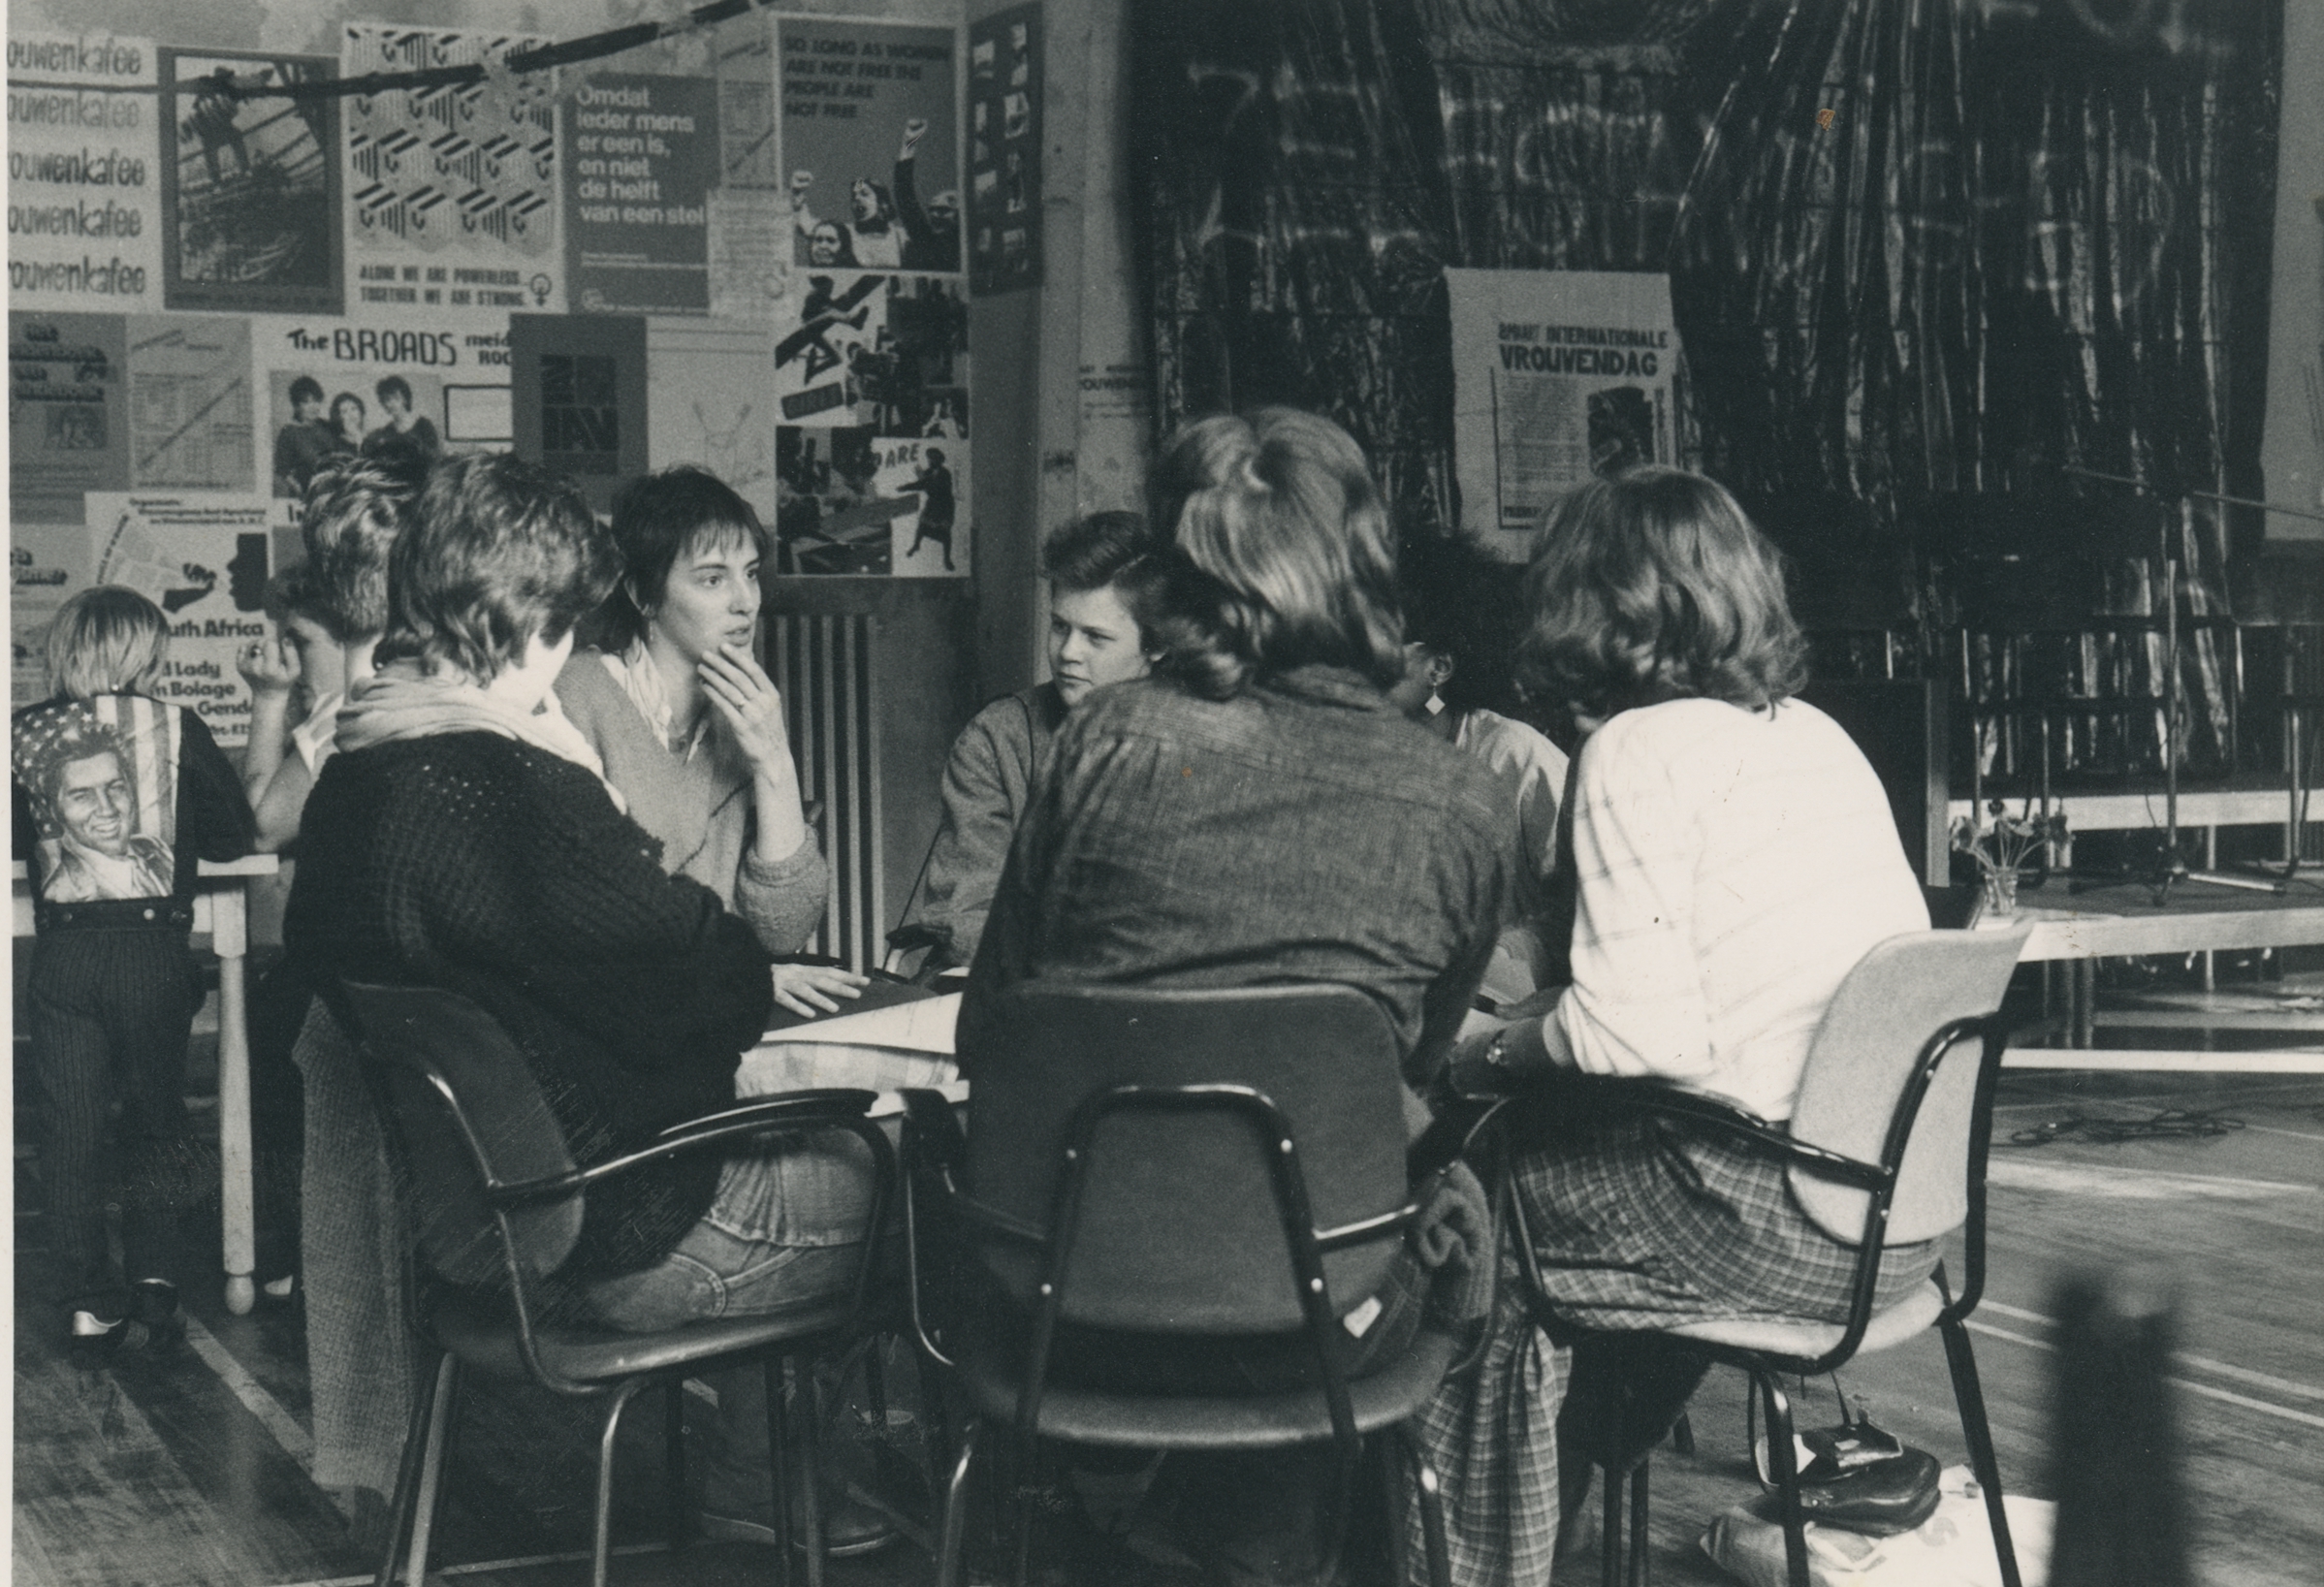 Vrouwencentrum. Internationale vrouwendag op 8 maart 1984. Fotograaf: Feniks / Vrouwencentrum, collectie Regionaal Archief Tilburg.